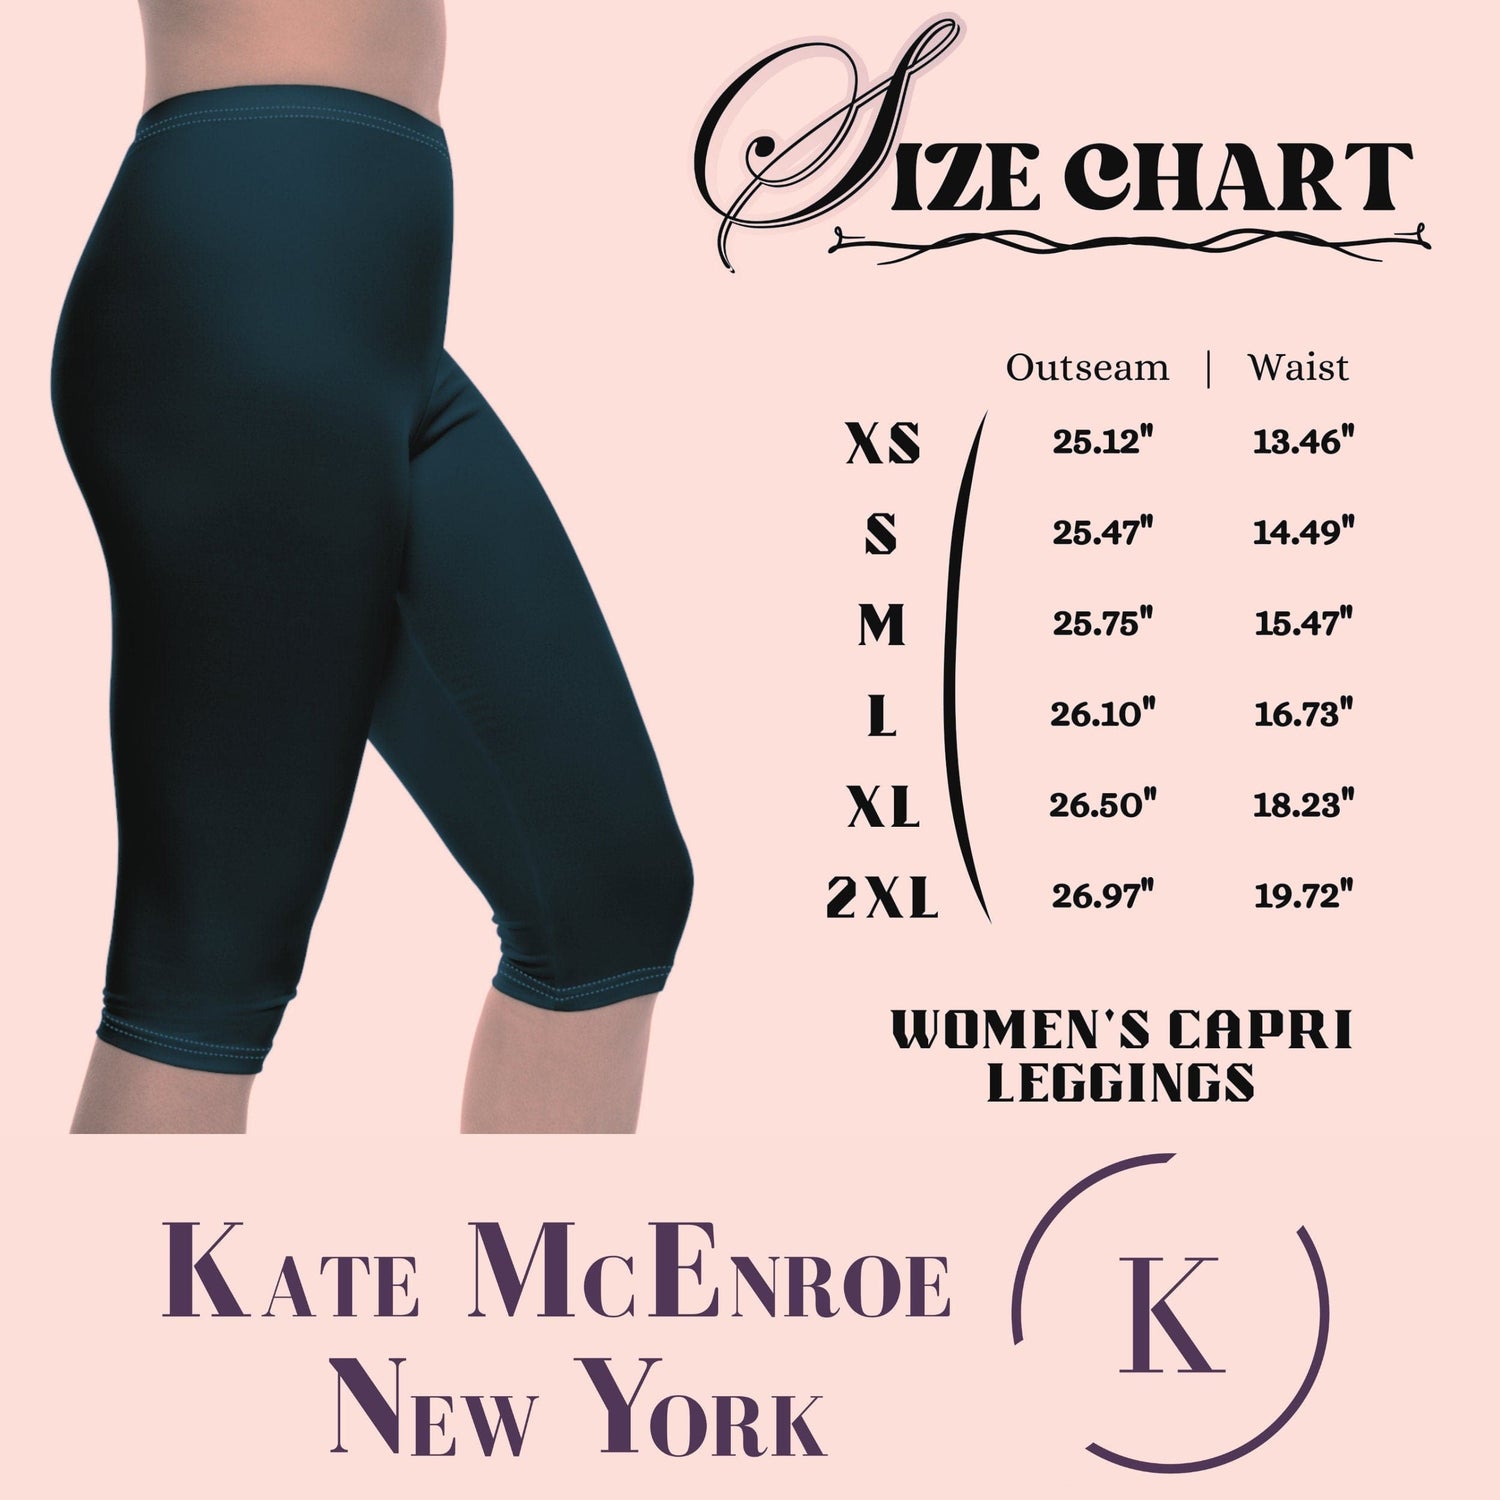 Kate McEnroe New York Groovy Flower Power 70s Psychedelic Swirl Skinny Fit Womens Capri Leggings Leggings